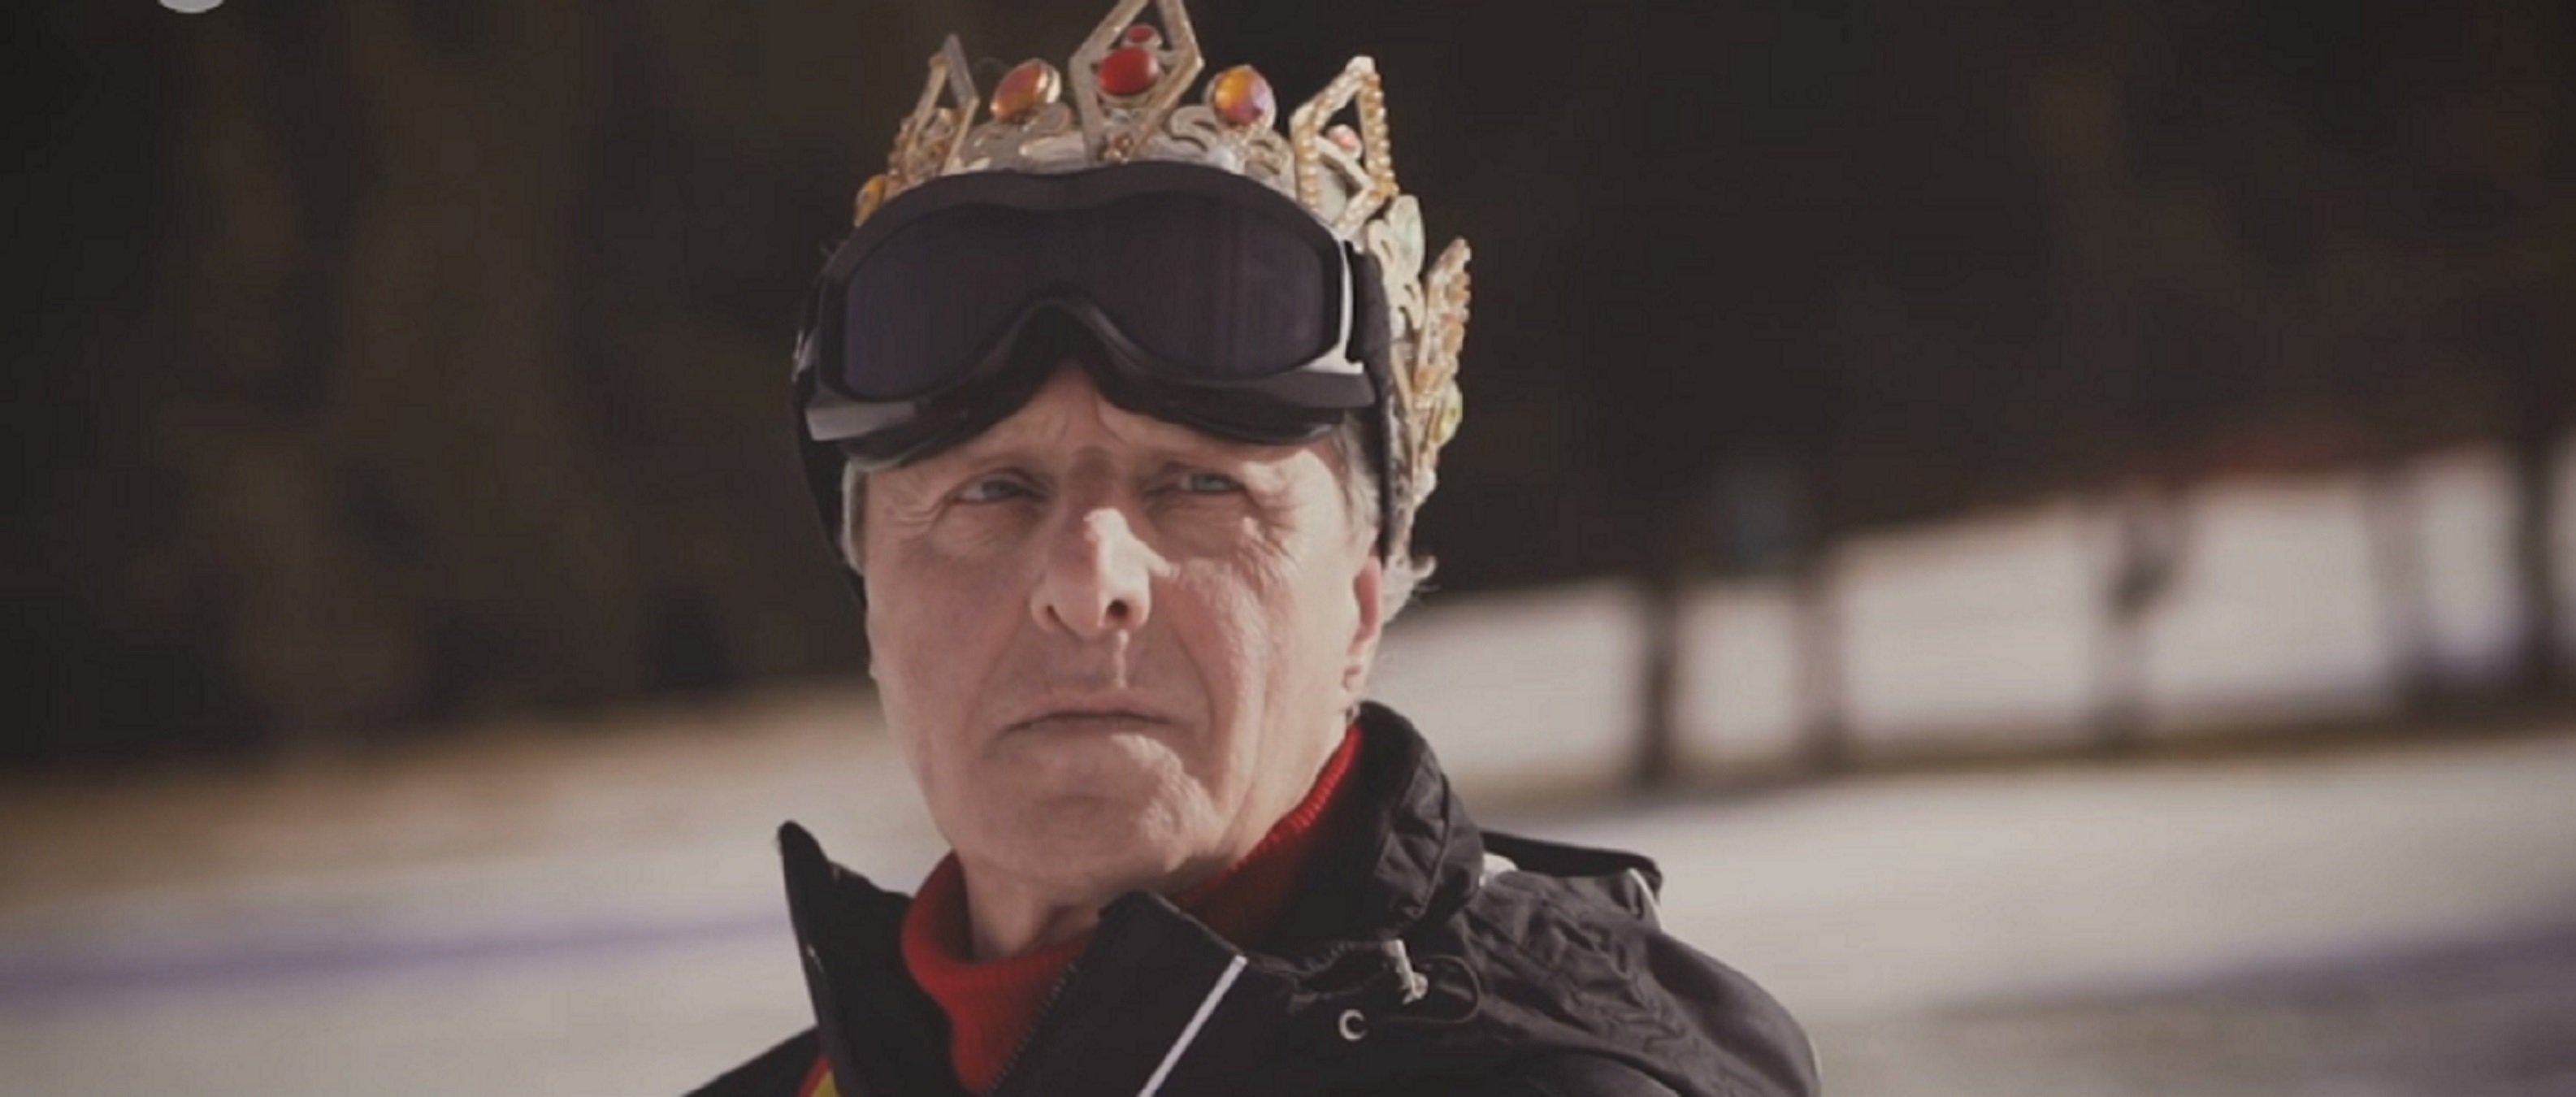 El fill del Rei, esquiant amb corona i bandera d'Espanya, al 'FAQS': "Faig com els reis"